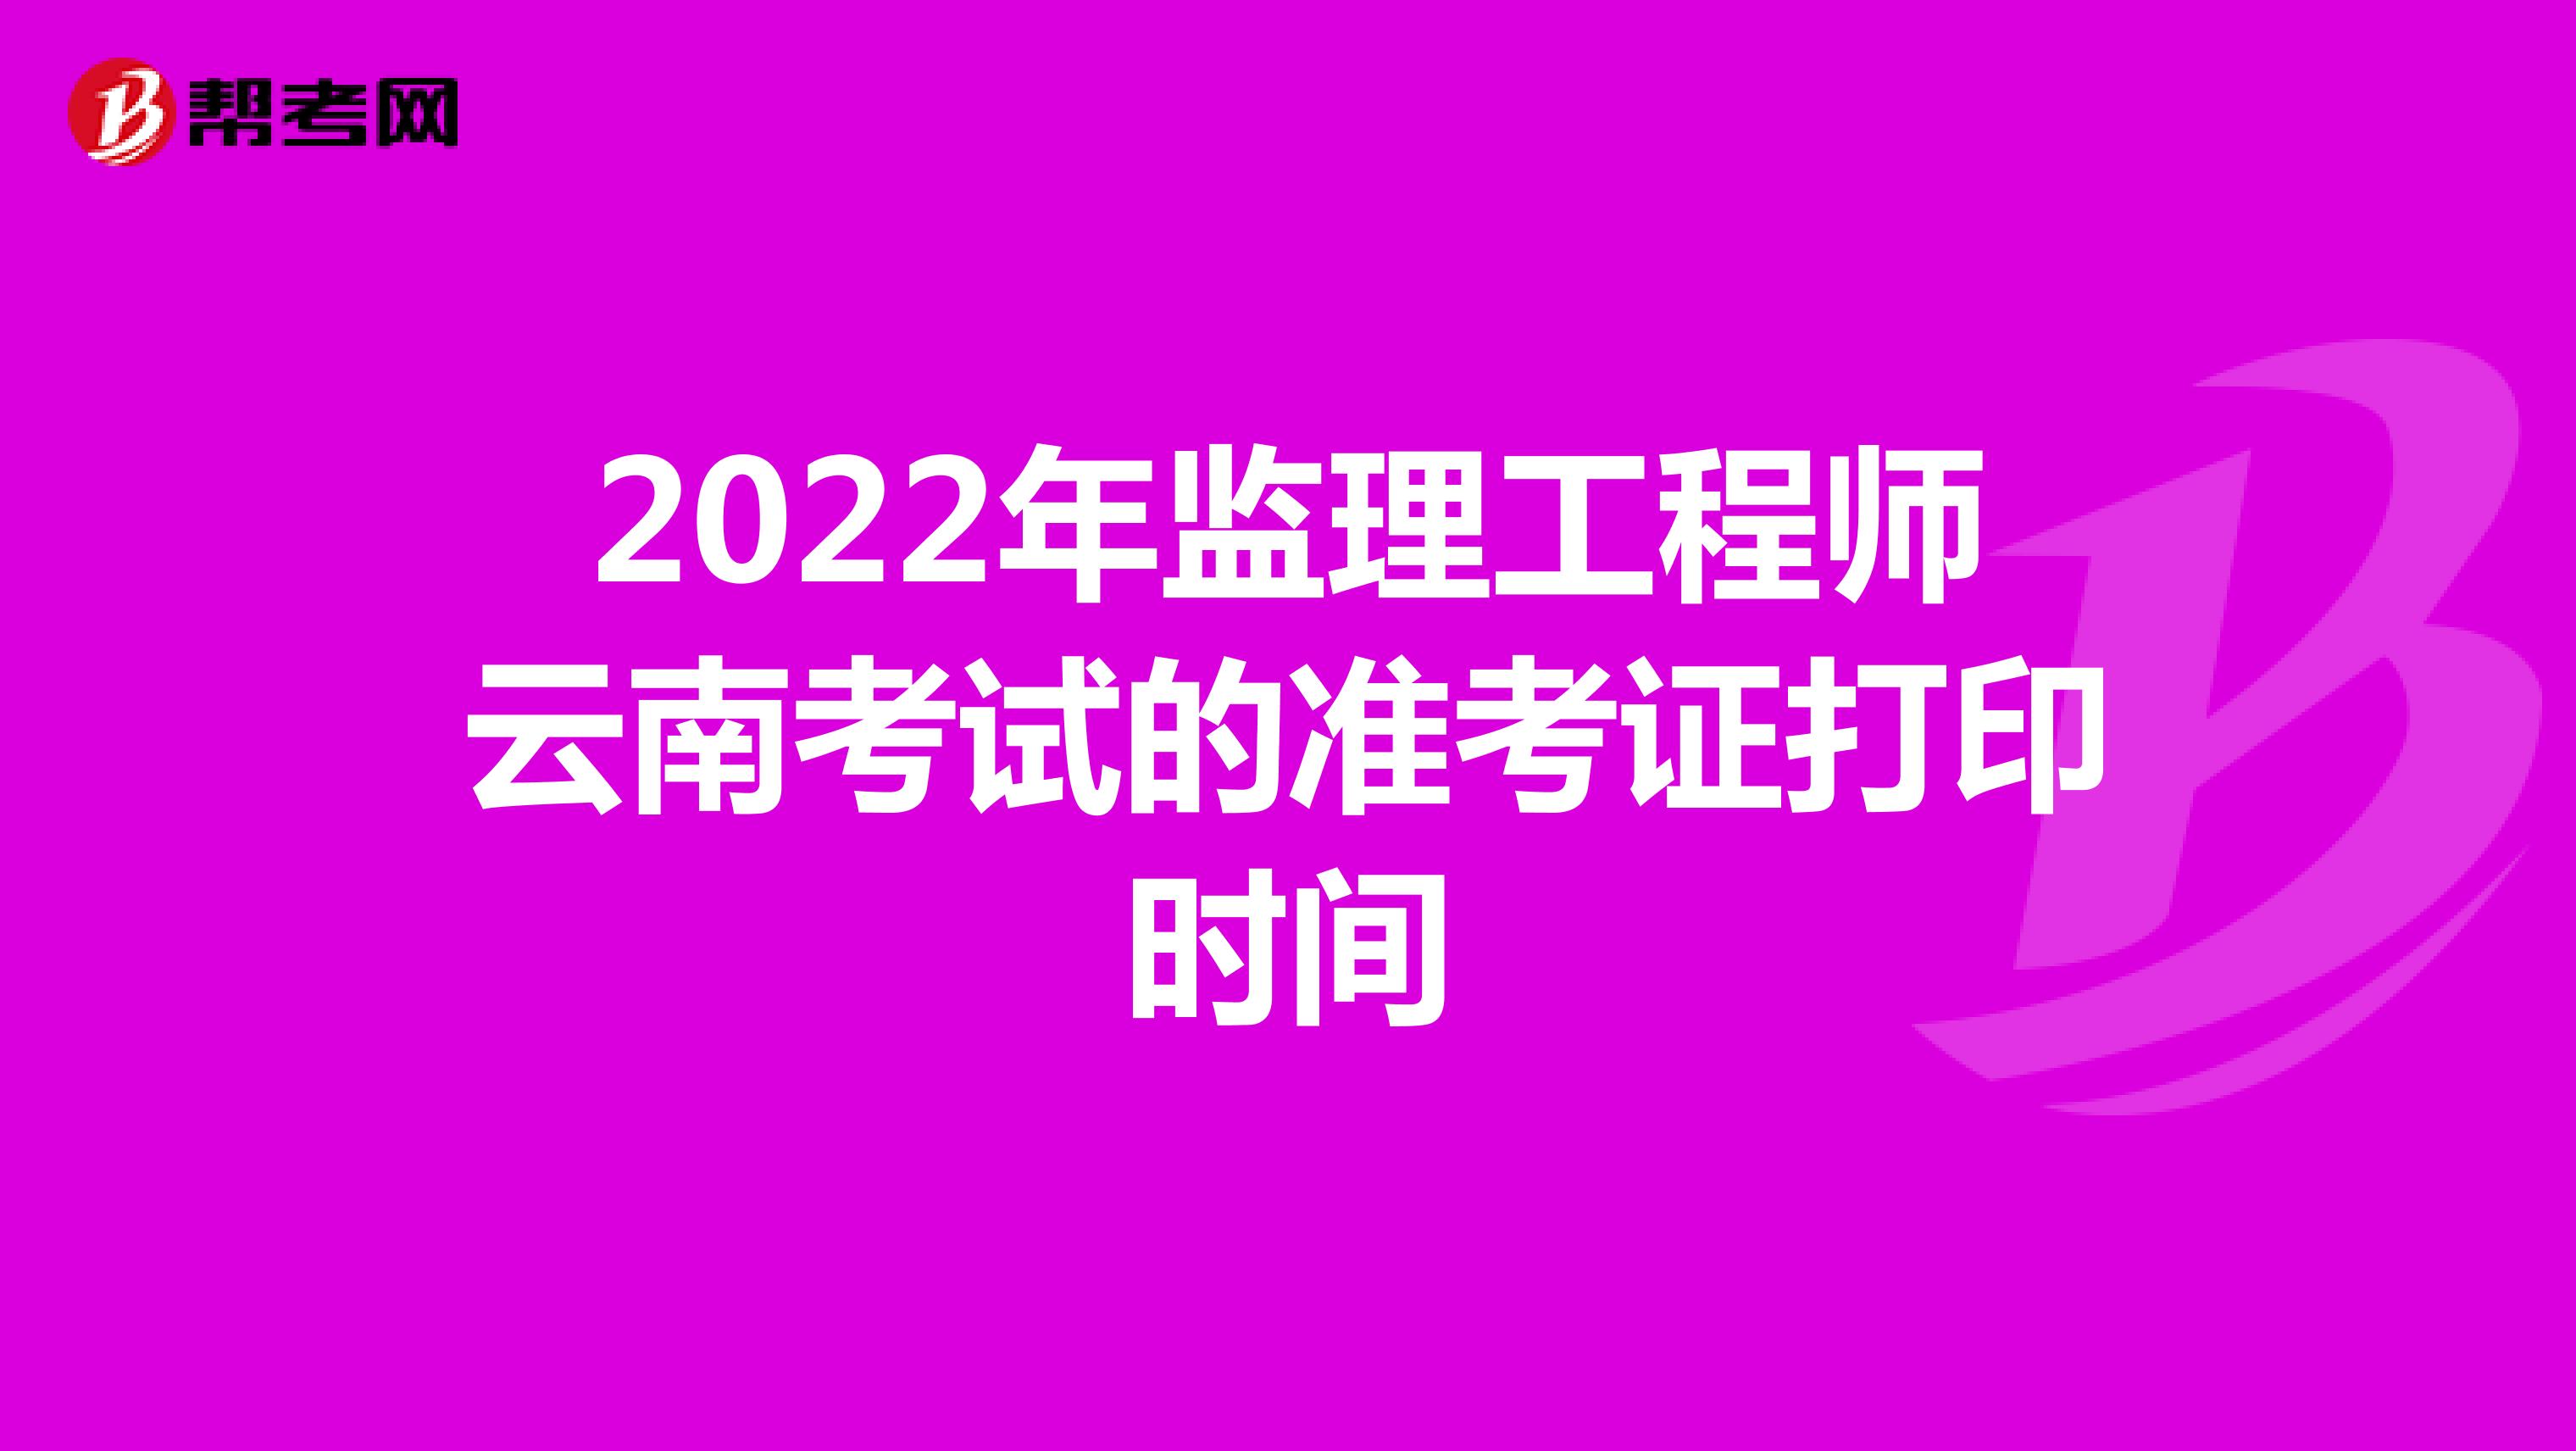 2022年监理工程师云南考试的准考证打印时间